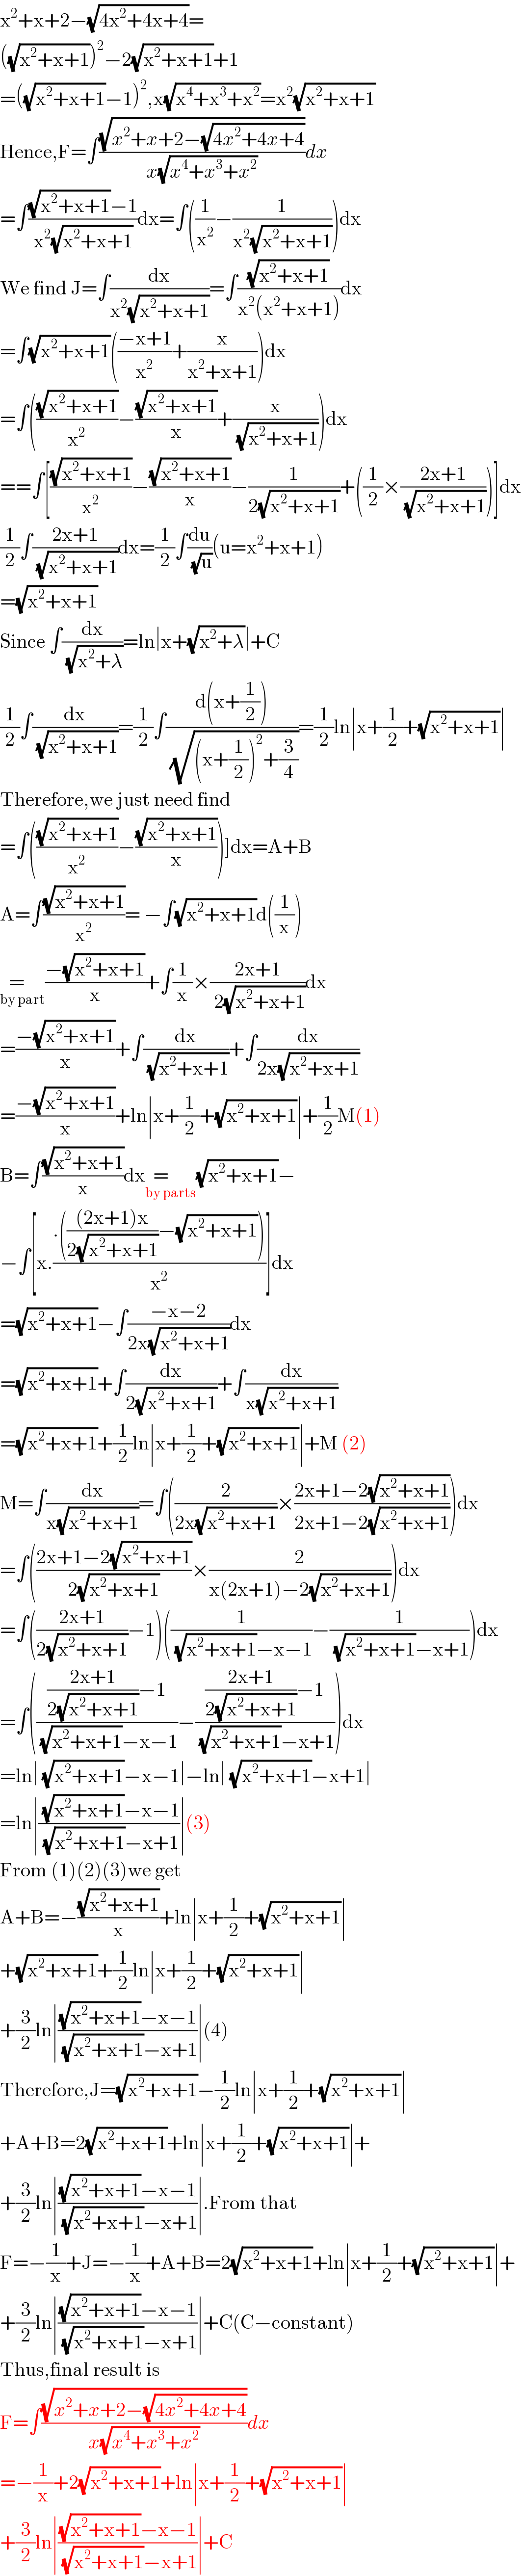 x^2 +x+2−(√(4x^2 +4x+4))=  ((√(x^2 +x+1)))^2 −2(√(x^2 +x+1))+1  =((√(x^2 +x+1))−1)^2 ,x(√(x^4 +x^3 +x^2 ))=x^2 (√(x^2 +x+1))  Hence,F=∫((√(x^2 +x+2−(√(4x^2 +4x+4))))/(x(√(x^4 +x^3 +x^2 ))))dx  =∫(((√(x^2 +x+1))−1)/(x^2 (√(x^2 +x+1))))dx=∫((1/x^2 )−(1/(x^2 (√(x^2 +x+1)))))dx  We find J=∫(dx/(x^2 (√(x^2 +x+1))))=∫((√(x^2 +x+1))/(x^2 (x^2 +x+1)))dx  =∫(√(x^2 +x+1))(((−x+1)/x^2 )+(x/(x^2 +x+1)))dx  =∫(((√(x^2 +x+1))/x^2 )−((√(x^2 +x+1))/x)+(x/( (√(x^2 +x+1)))))dx  ==∫[((√(x^2 +x+1))/x^2 )−((√(x^2 +x+1))/x)−(1/(2(√(x^2 +x+1))))+((1/2)×((2x+1)/( (√(x^2 +x+1)))))]dx  (1/2)∫((2x+1)/( (√(x^2 +x+1))))dx=(1/2)∫(du/( (√u)))(u=x^2 +x+1)  =(√(x^2 +x+1))  Since ∫(dx/( (√(x^2 +λ))))=ln∣x+(√(x^2 +λ))∣+C  (1/2)∫(dx/( (√(x^2 +x+1))))=(1/2)∫((d(x+(1/2)))/( (√((x+(1/2))^2 +(3/4)))))=(1/2)ln∣x+(1/2)+(√(x^2 +x+1))∣  Therefore,we just need find  =∫(((√(x^2 +x+1))/x^2 )−((√(x^2 +x+1))/x))]dx=A+B  A=∫((√(x^2 +x+1))/x^2 )= −∫(√(x^2 +x+1))d((1/x))     =   _(by part) ((−(√(x^2 +x+1)))/x)+∫(1/x)×((2x+1)/( 2(√(x^2 +x+1))))dx  =((−(√(x^2 +x+1)))/x)+∫(dx/( (√(x^2 +x+1))))+∫(dx/(2x(√(x^2 +x+1))))  =((−(√(x^2 +x+1)))/x)+ln∣x+(1/2)+(√(x^2 +x+1))∣+(1/2)M(1)  B=∫((√(x^2 +x+1))/x)dx=     _(by parts) (√(x^2 +x+1))−  −∫[x.((.((((2x+1)x)/(2(√(x^2 +x+1))))−(√(x^2 +x+1))))/x^2 )]dx  =(√(x^2 +x+1))−∫((−x−2)/(2x(√(x^2 +x+1))))dx  =(√(x^2 +x+1))+∫(dx/(2(√(x^2 +x+1))))+∫(dx/(x(√(x^2 +x+1))))  =(√(x^2 +x+1))+(1/2)ln∣x+(1/2)+(√(x^2 +x+1))∣+M (2)  M=∫(dx/(x(√(x^2 +x+1))))=∫((2/(2x(√(x^2 +x+1))))×((2x+1−2(√(x^2 +x+1)))/(2x+1−2(√(x^2 +x+1)))))dx  =∫(((2x+1−2(√(x^2 +x+1)))/(2(√(x^2 +x+1))))×(2/(x(2x+1)−2(√(x^2 +x+1)))))dx  =∫(((2x+1)/(2(√(x^2 +x+1))))−1)((1/( (√(x^2 +x+1))−x−1))−(1/( (√(x^2 +x+1))−x+1)))dx  =∫(((((2x+1)/(2(√(x^2 +x+1))))−1)/( (√(x^2 +x+1))−x−1))−((((2x+1)/(2(√(x^2 +x+1))))−1)/( (√(x^2 +x+1))−x+1)))dx  =ln∣ (√(x^2 +x+1))−x−1∣−ln∣ (√(x^2 +x+1))−x+1∣  =ln∣(( (√(x^2 +x+1))−x−1)/( (√(x^2 +x+1))−x+1))∣(3)  From (1)(2)(3)we get  A+B=−((√(x^2 +x+1))/x)+ln∣x+(1/2)+(√(x^2 +x+1))∣  +(√(x^2 +x+1))+(1/2)ln∣x+(1/2)+(√(x^2 +x+1))∣  +(3/2)ln∣(((√(x^2 +x+1))−x−1)/( (√(x^2 +x+1))−x+1))∣(4)  Therefore,J=(√(x^2 +x+1))−(1/2)ln∣x+(1/2)+(√(x^2 +x+1))∣  +A+B=2(√(x^2 +x+1))+ln∣x+(1/2)+(√(x^2 +x+1))∣+  +(3/2)ln∣(((√(x^2 +x+1))−x−1)/( (√(x^2 +x+1))−x+1))∣.From that  F=−(1/x)+J=−(1/x)+A+B=2(√(x^2 +x+1))+ln∣x+(1/2)+(√(x^2 +x+1))∣+  +(3/2)ln∣(((√(x^2 +x+1))−x−1)/( (√(x^2 +x+1))−x+1))∣+C(C−constant)  Thus,final result is  F=∫((√(x^2 +x+2−(√(4x^2 +4x+4))))/(x(√(x^4 +x^3 +x^2 ))))dx  =−(1/x)+2(√(x^2 +x+1))+ln∣x+(1/2)+(√(x^2 +x+1))∣  +(3/2)ln∣(((√(x^2 +x+1))−x−1)/( (√(x^2 +x+1))−x+1))∣+C  